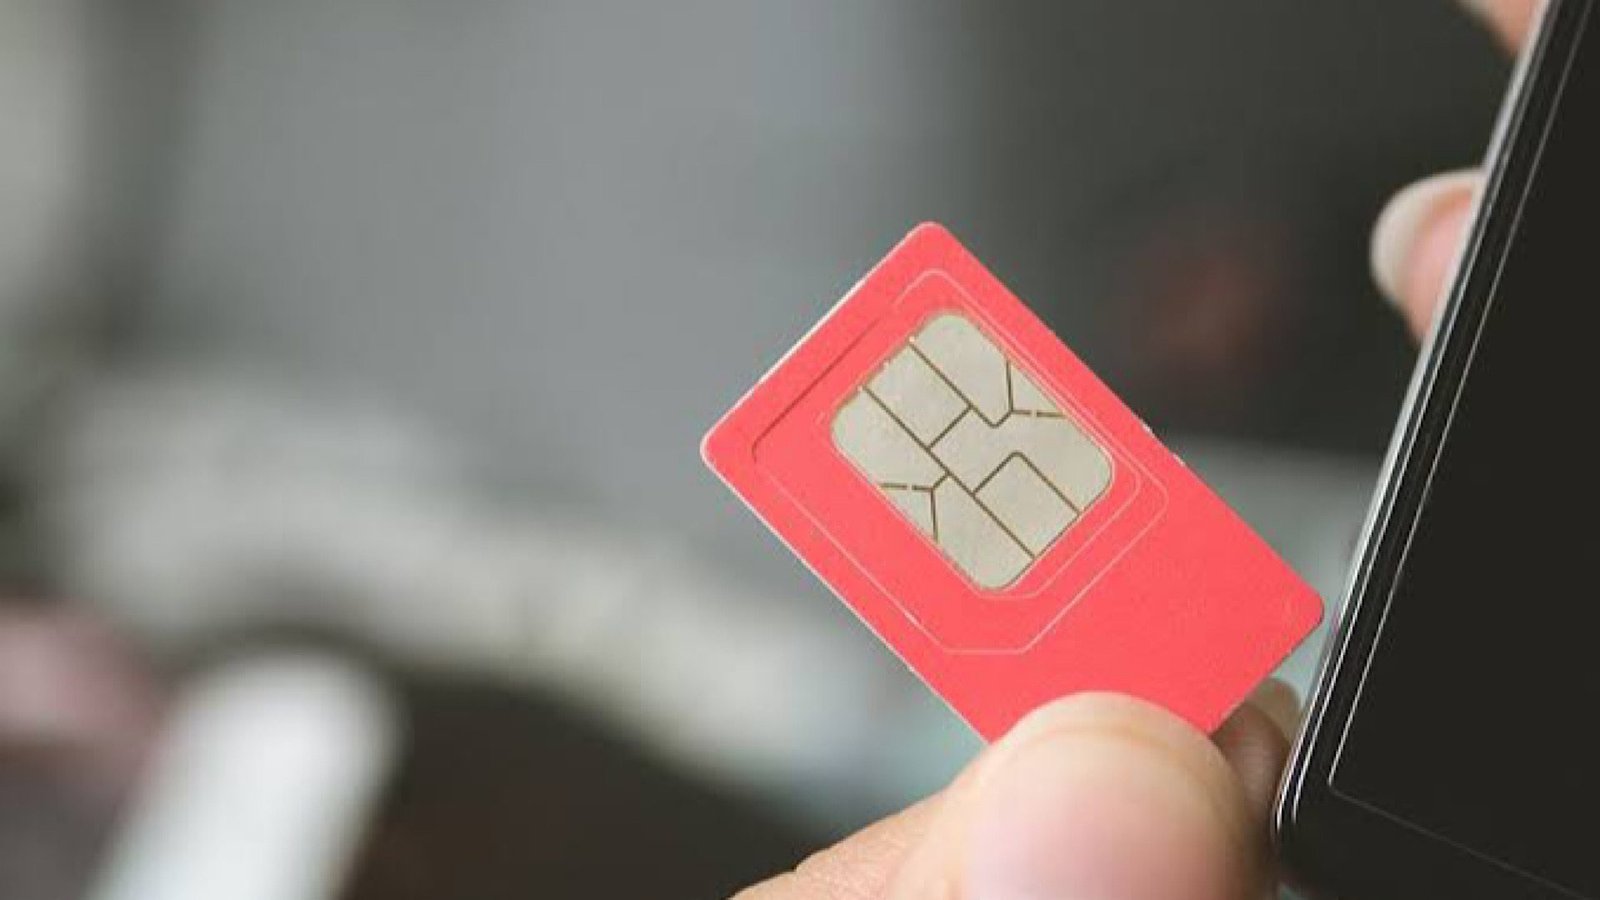 FBR Decides to Block SIMs Despite PTA’s Refusal